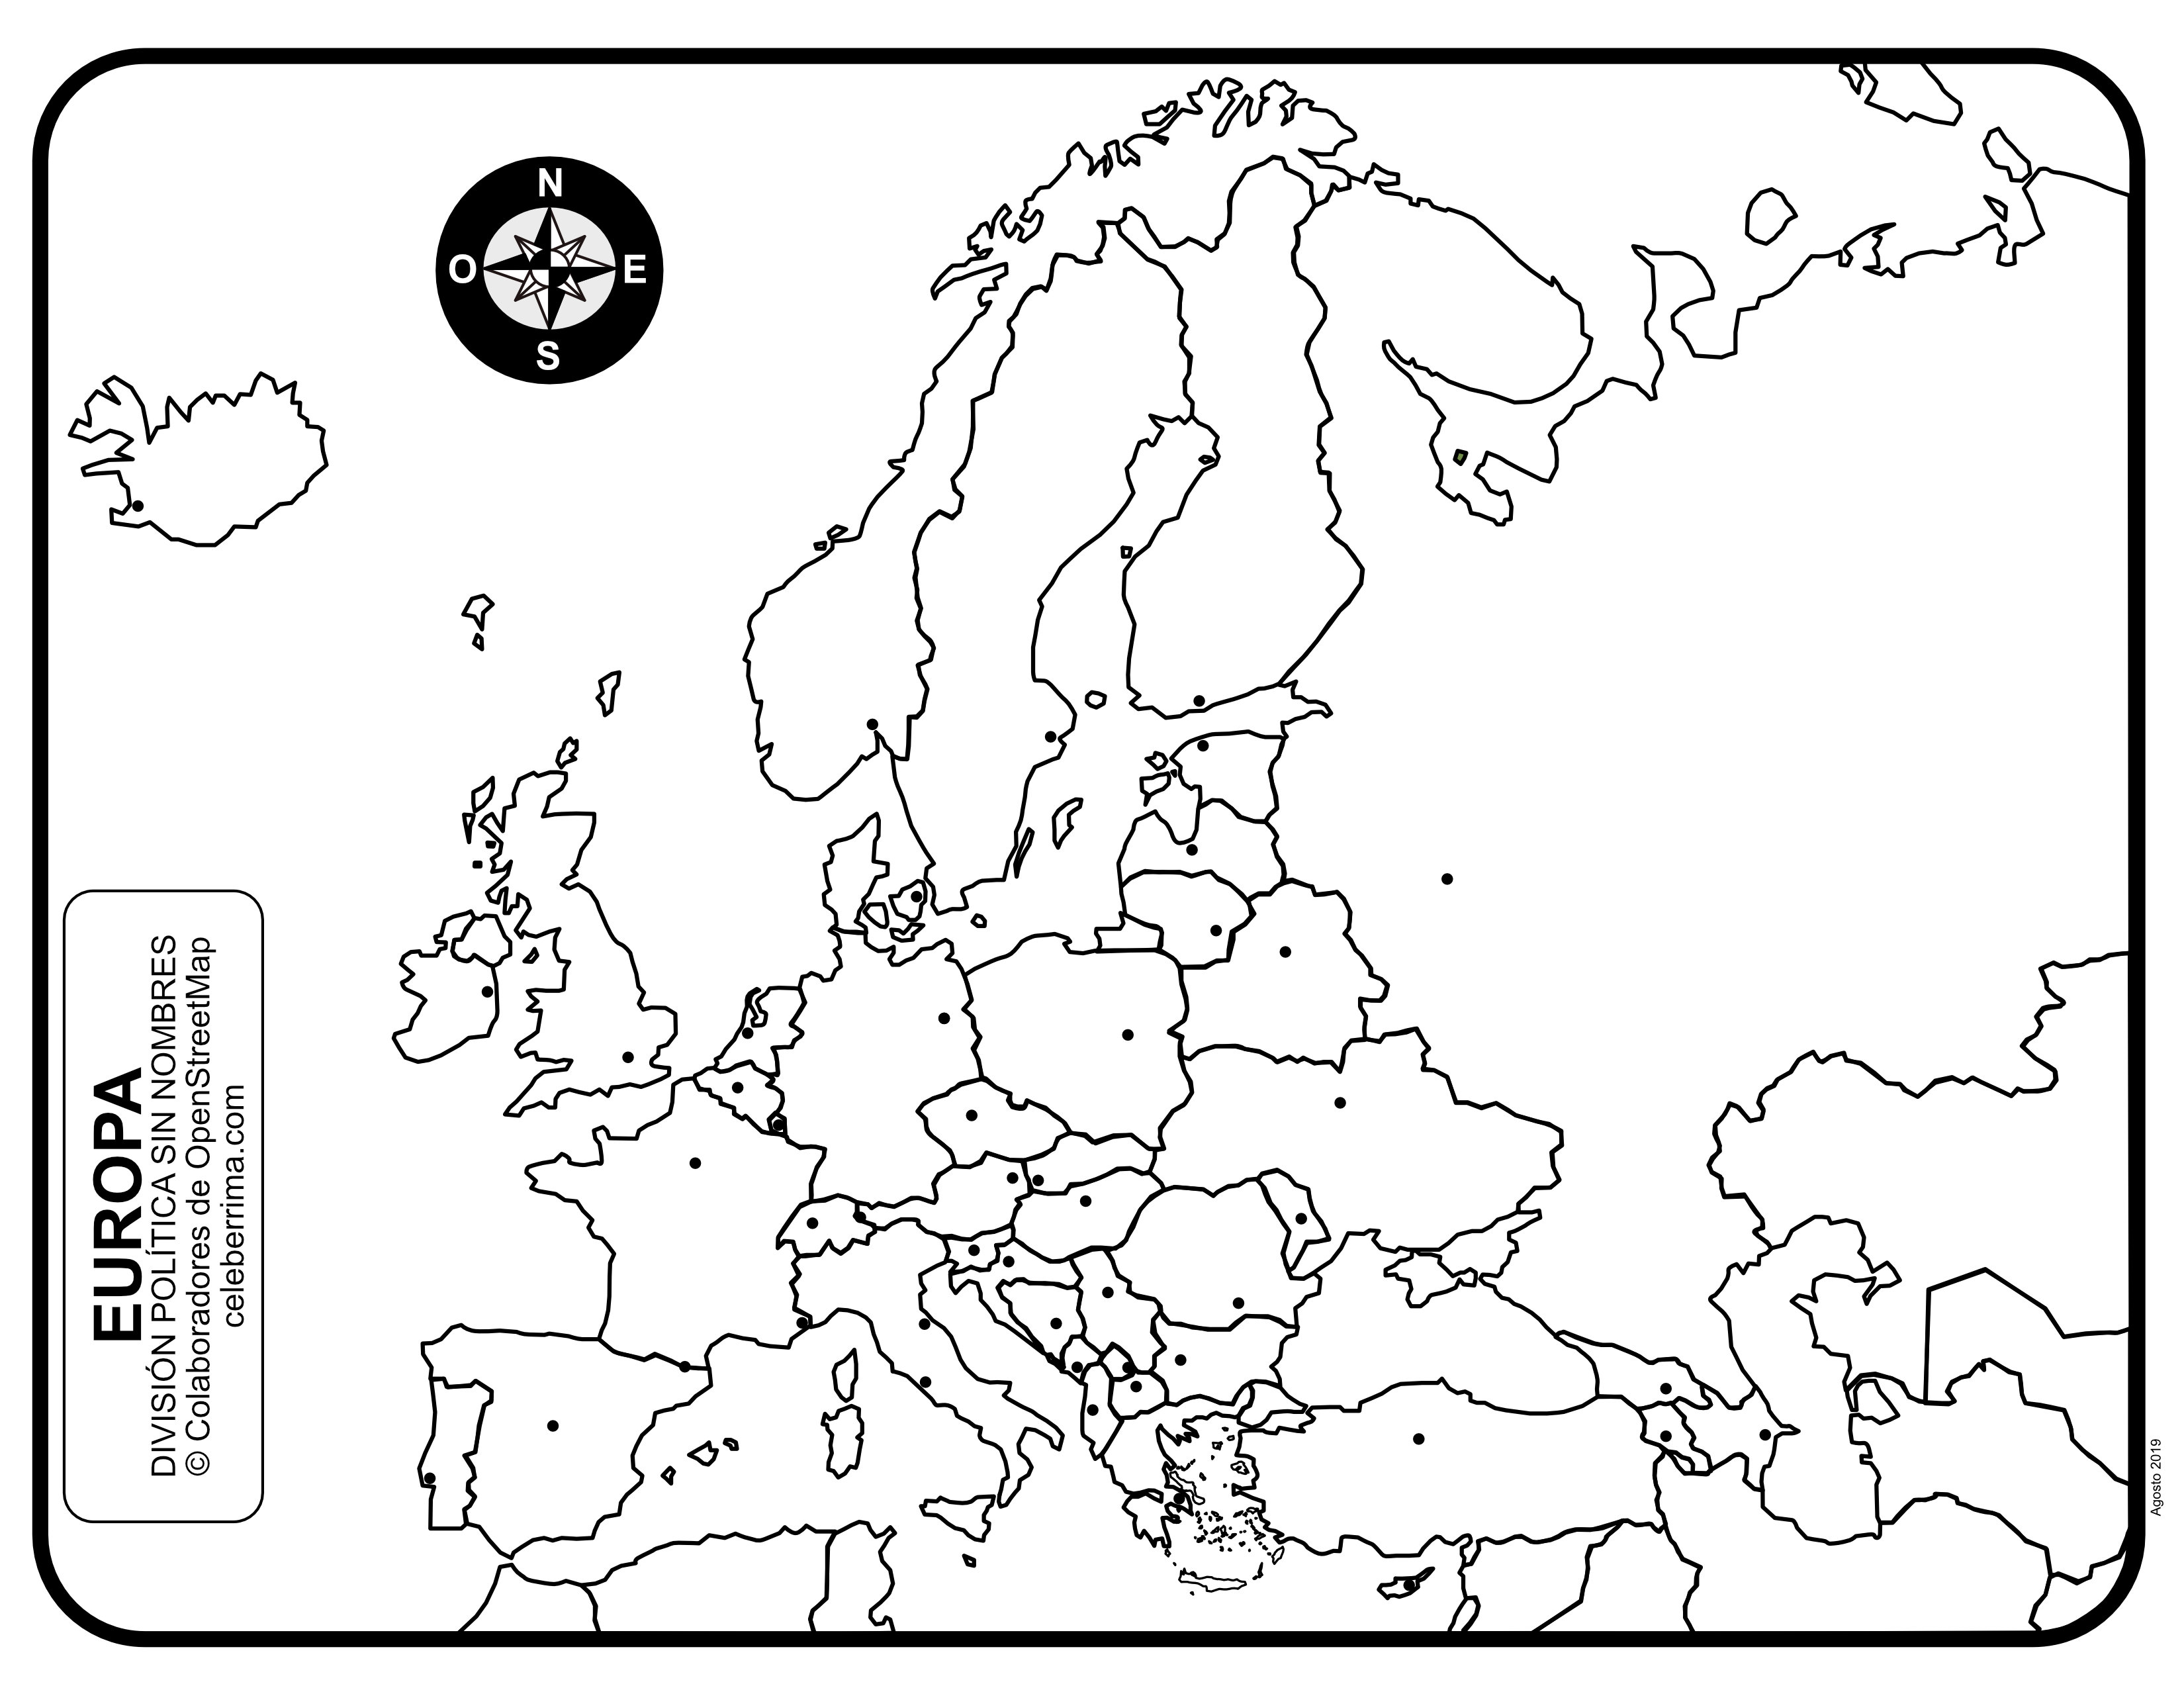 en-respuesta-a-la-disturbio-distribuci-n-mapa-politico-de-europa-para